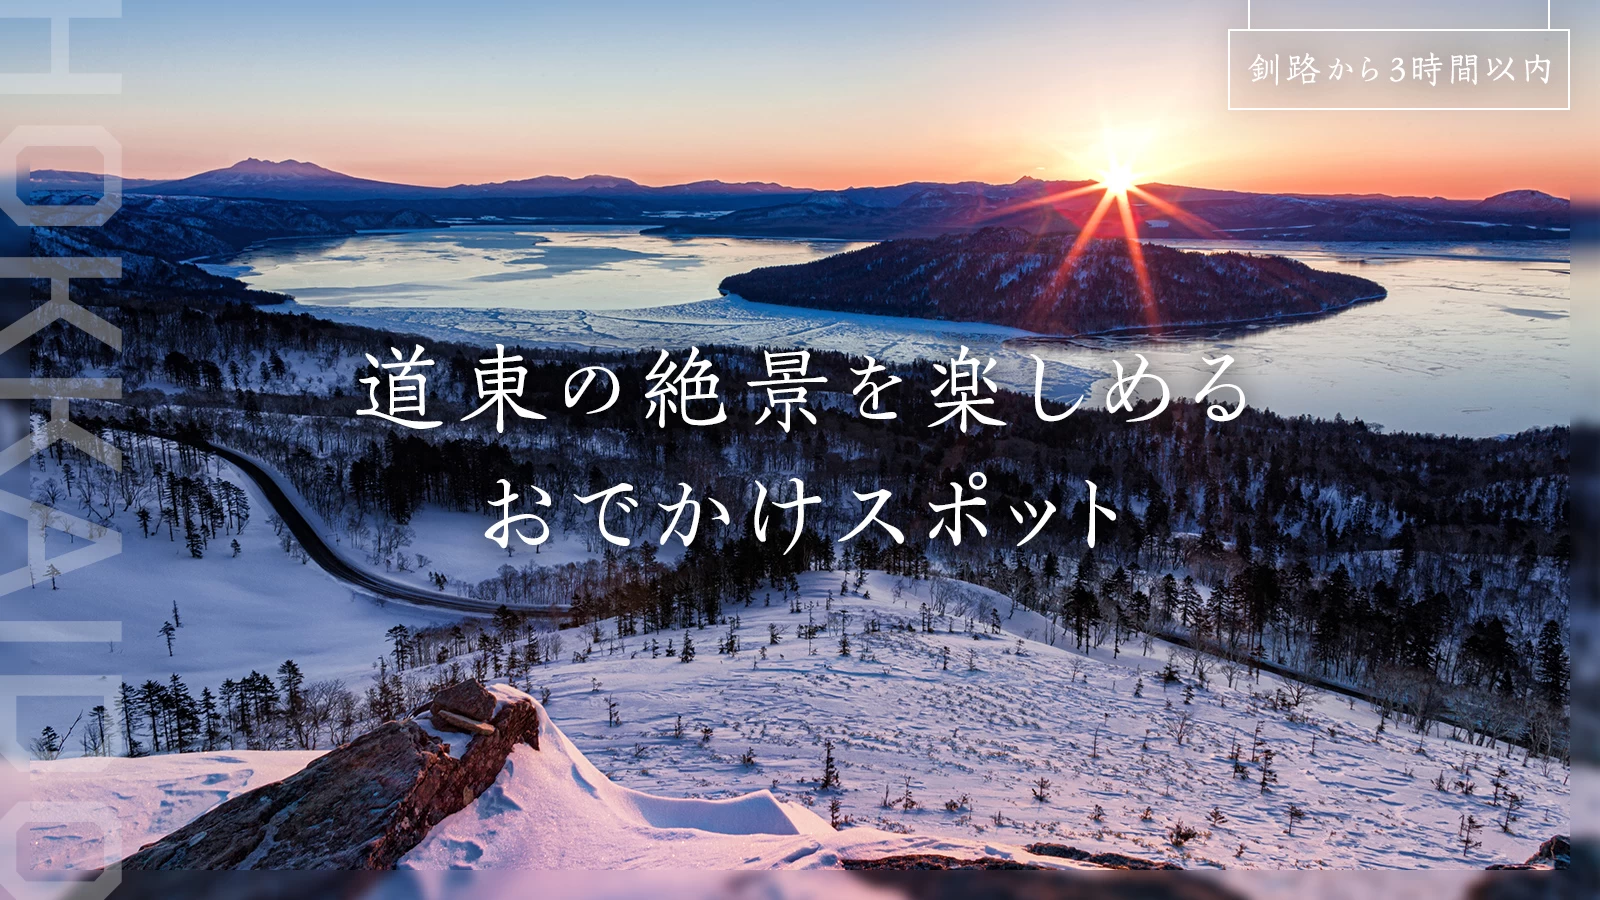 【釧路から3時間以内】道東の絶景を楽しめるおでかけスポット19選